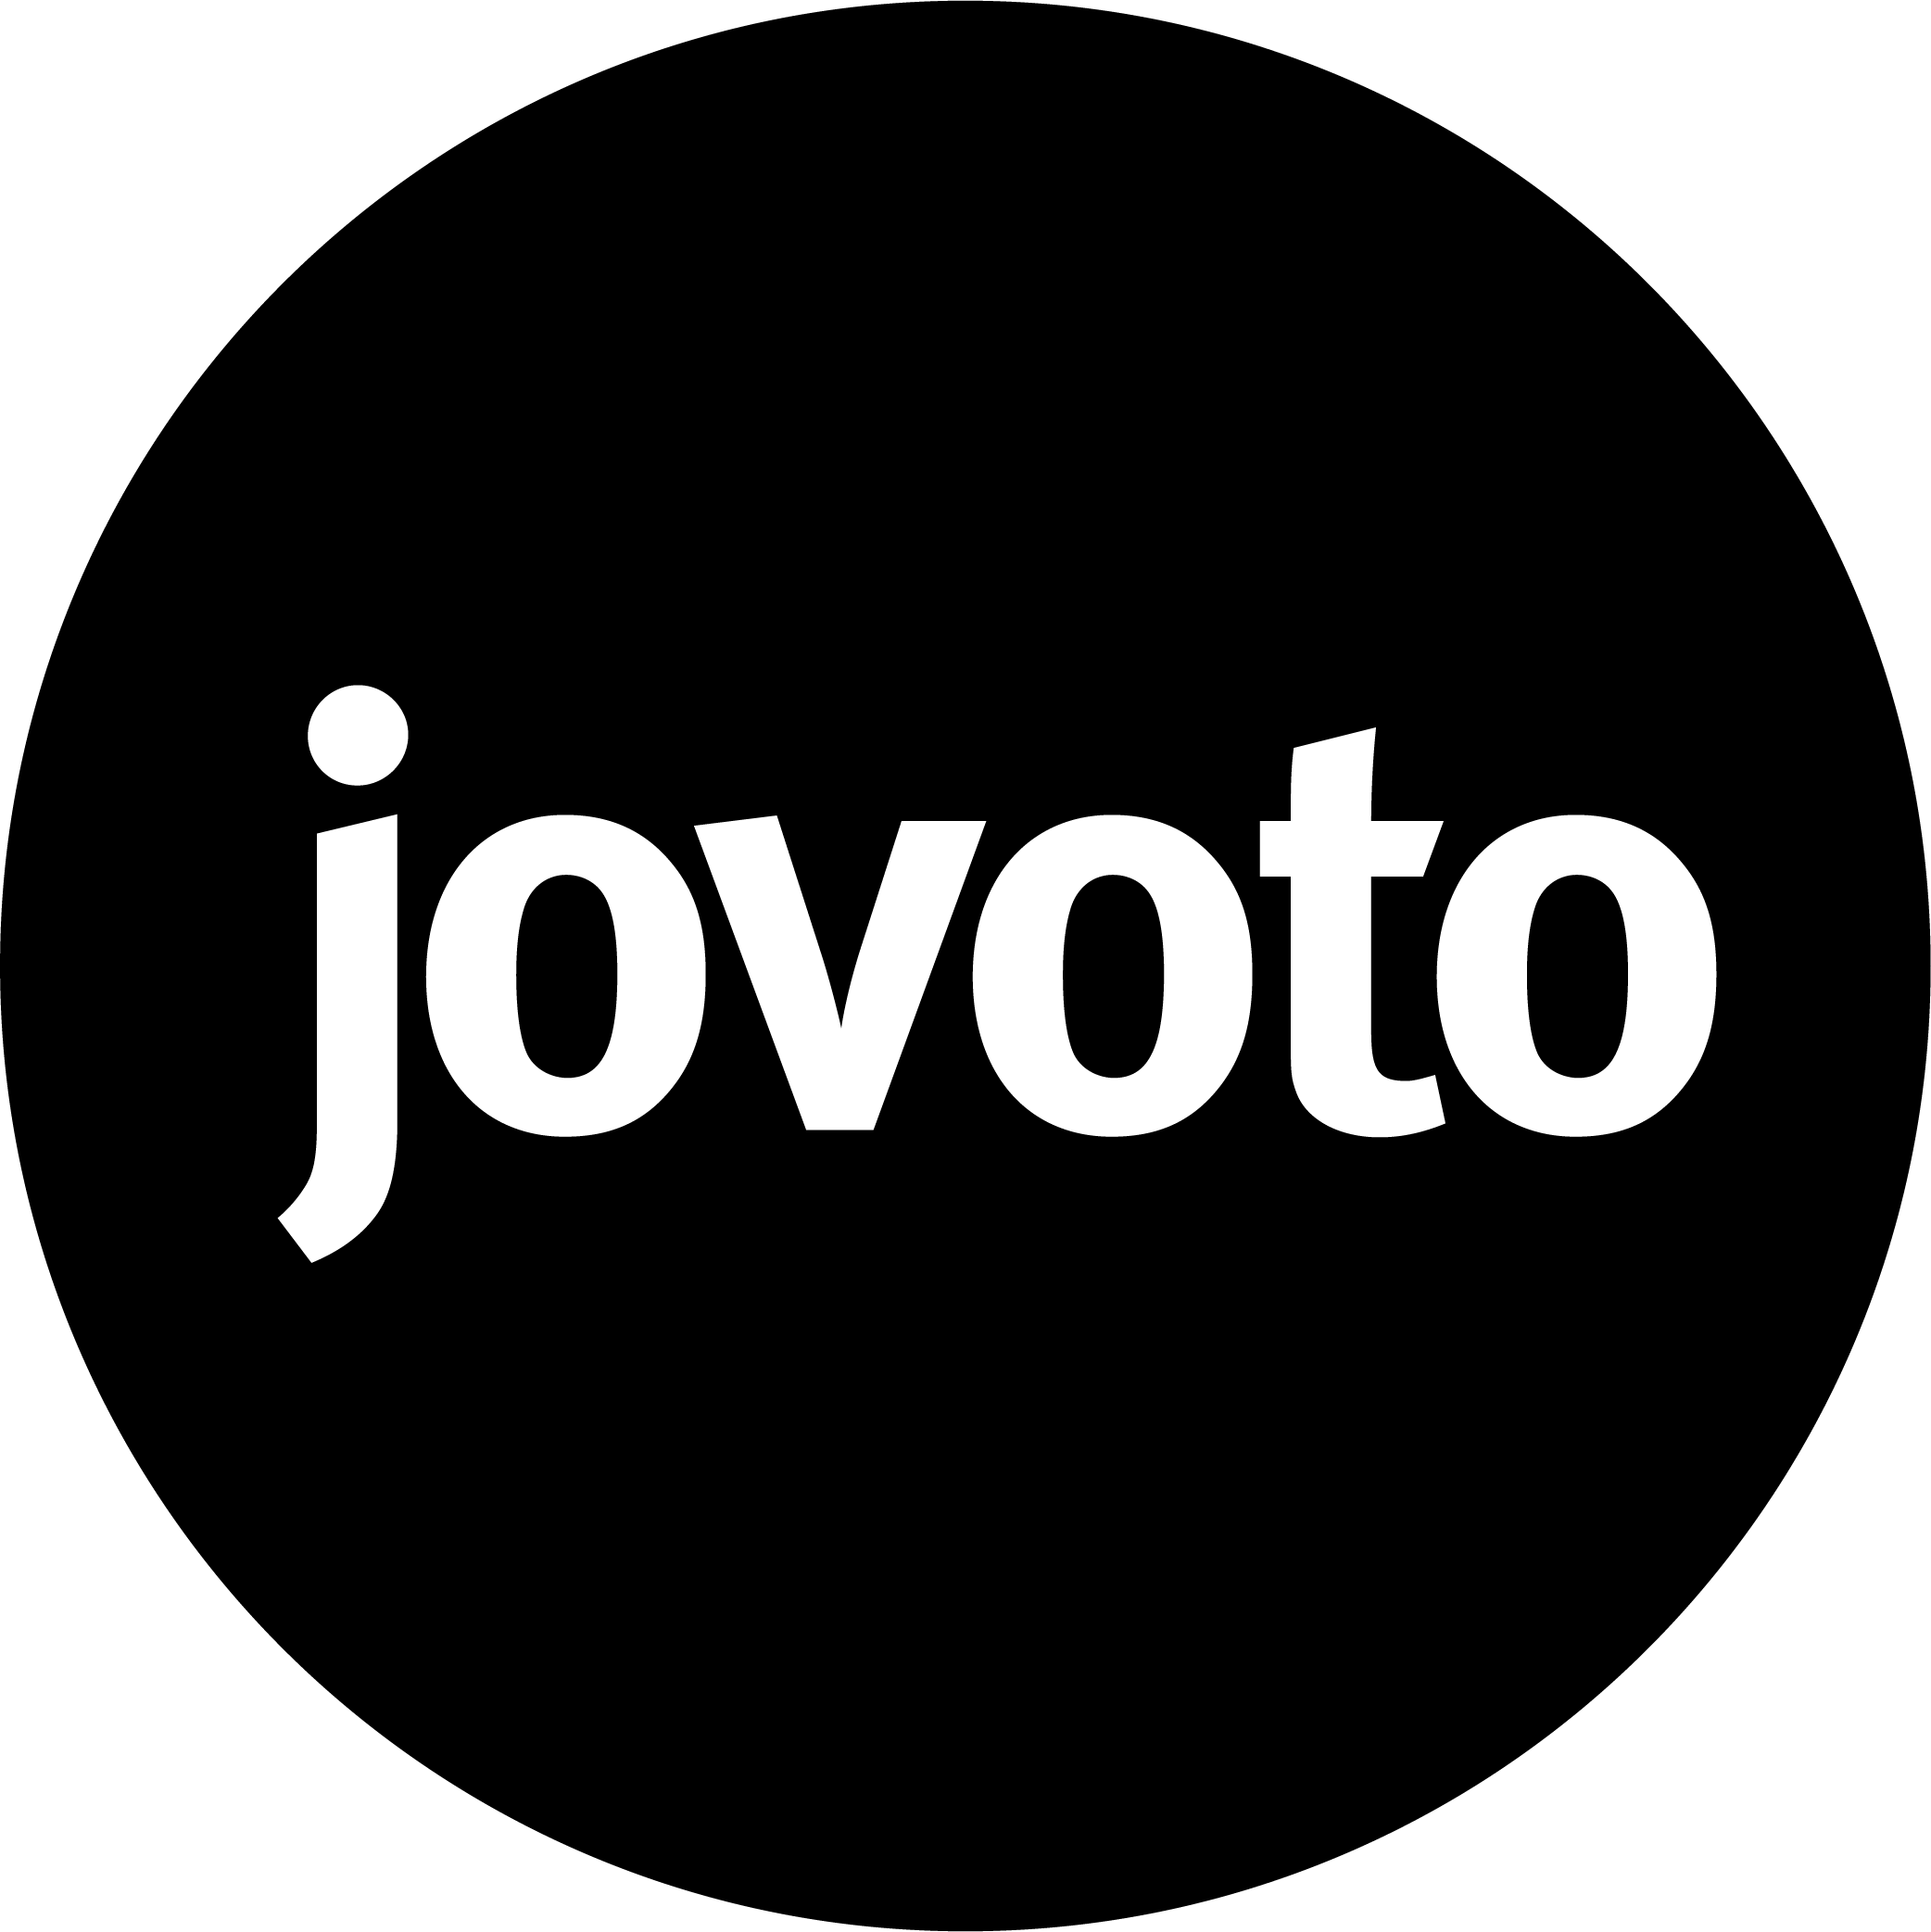 jovoto's logo